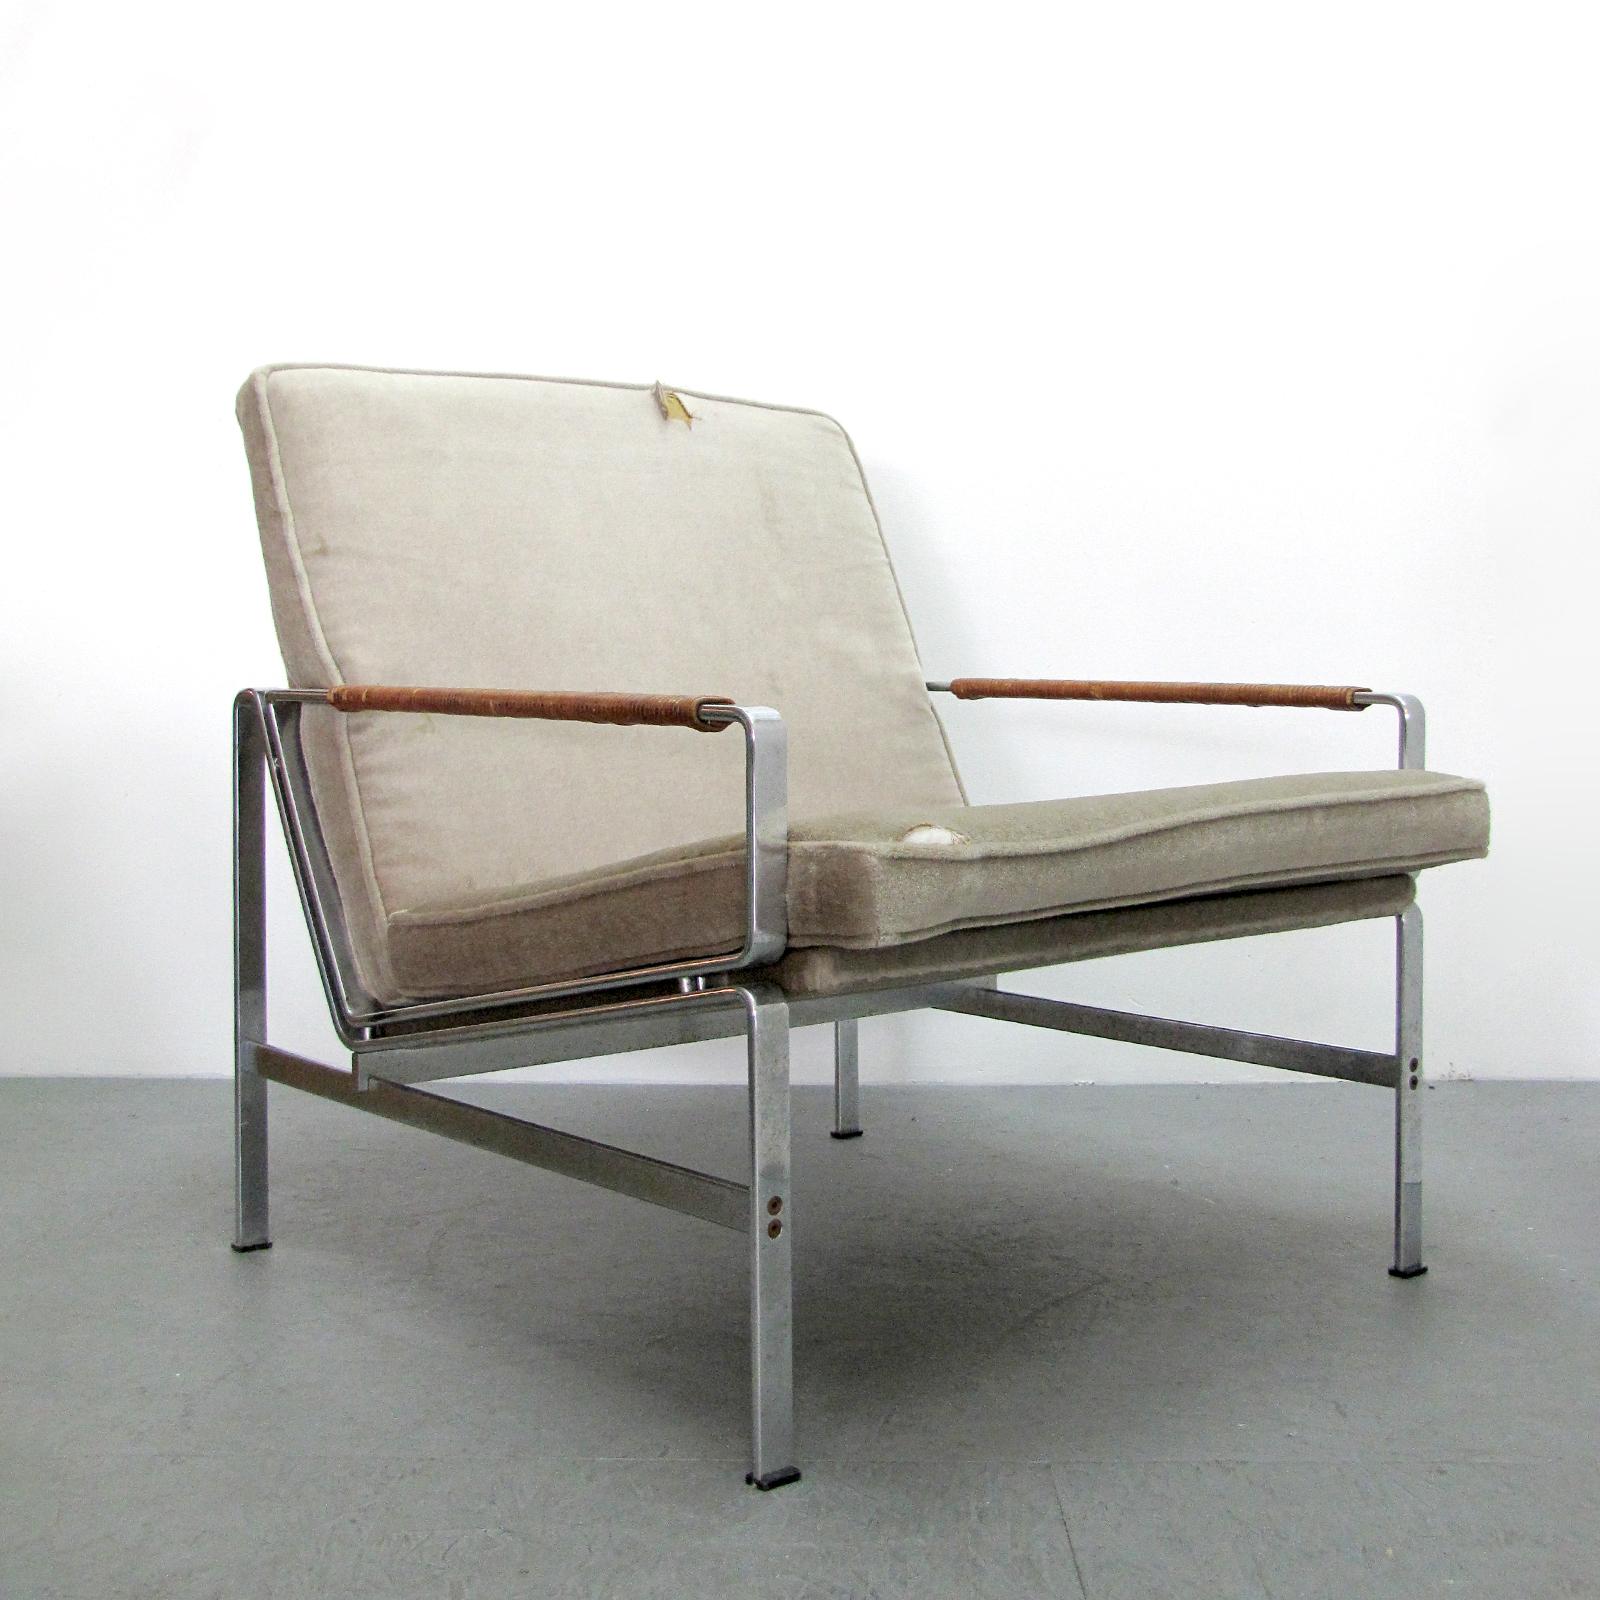 magnifique chaise longue FK 6720 de Fabricius & Kastholm en acier avec accoudoirs en cuir, revêtement d'origine en mohair beige/gris avec déchirures et taches.